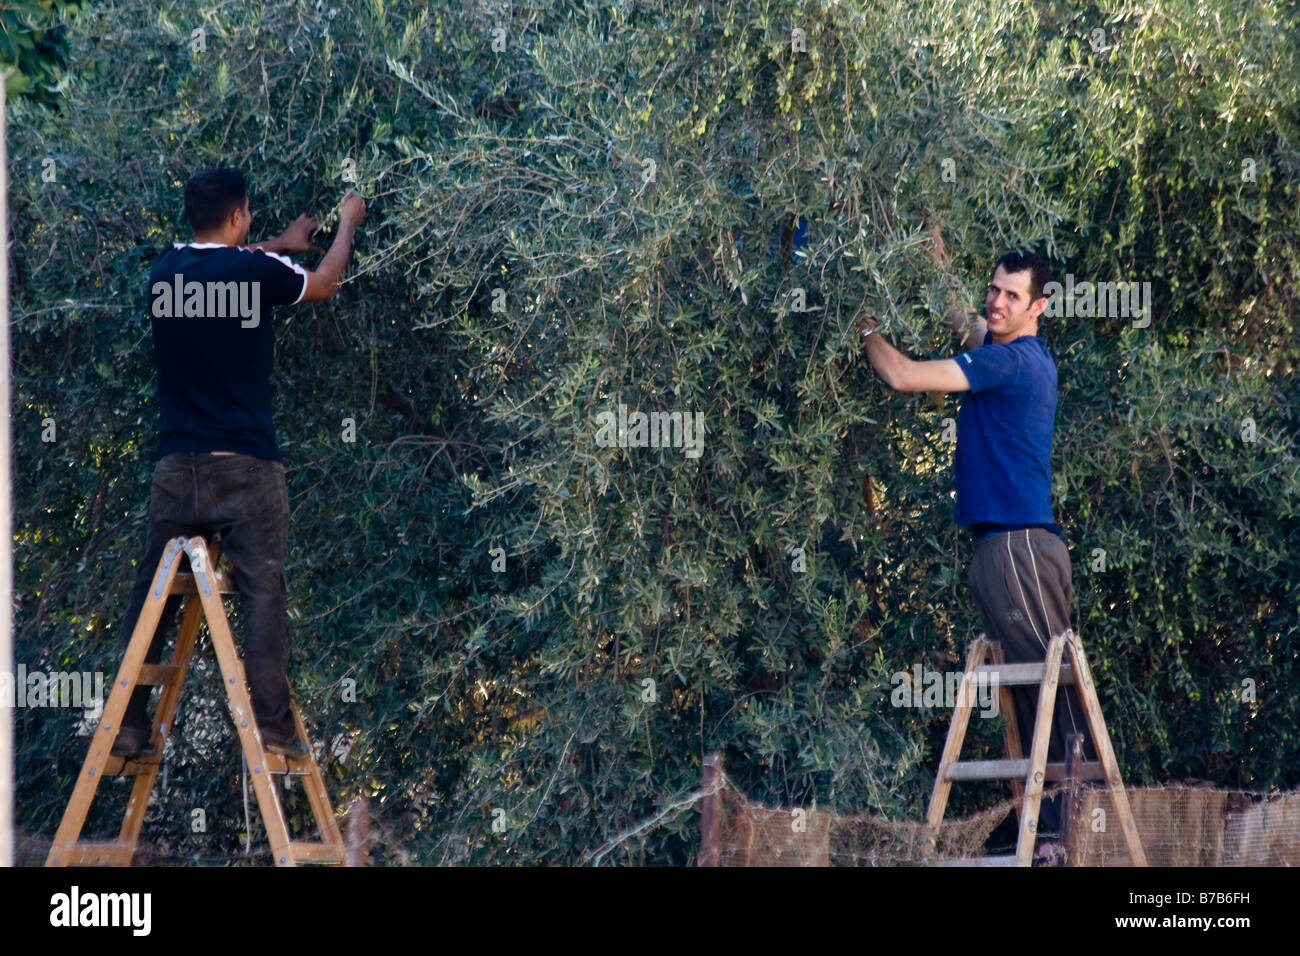 Cueillette des olives palestiniens à Naplouse, Cisjordanie Territoires Palestiniens Banque D'Images